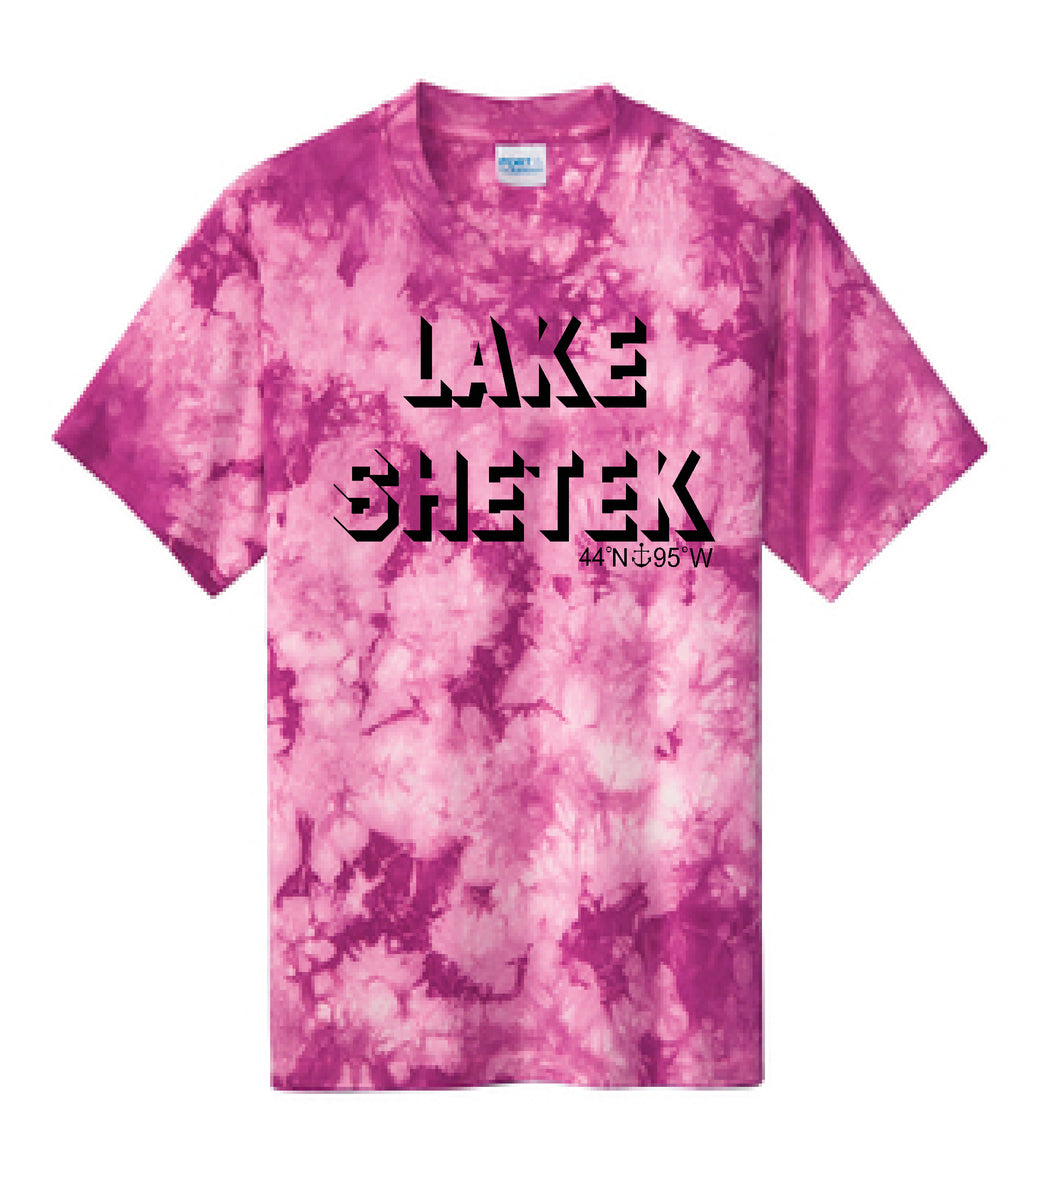 Lake Sarah or Lake Shetek Pink Crystal Tie Dye Tee